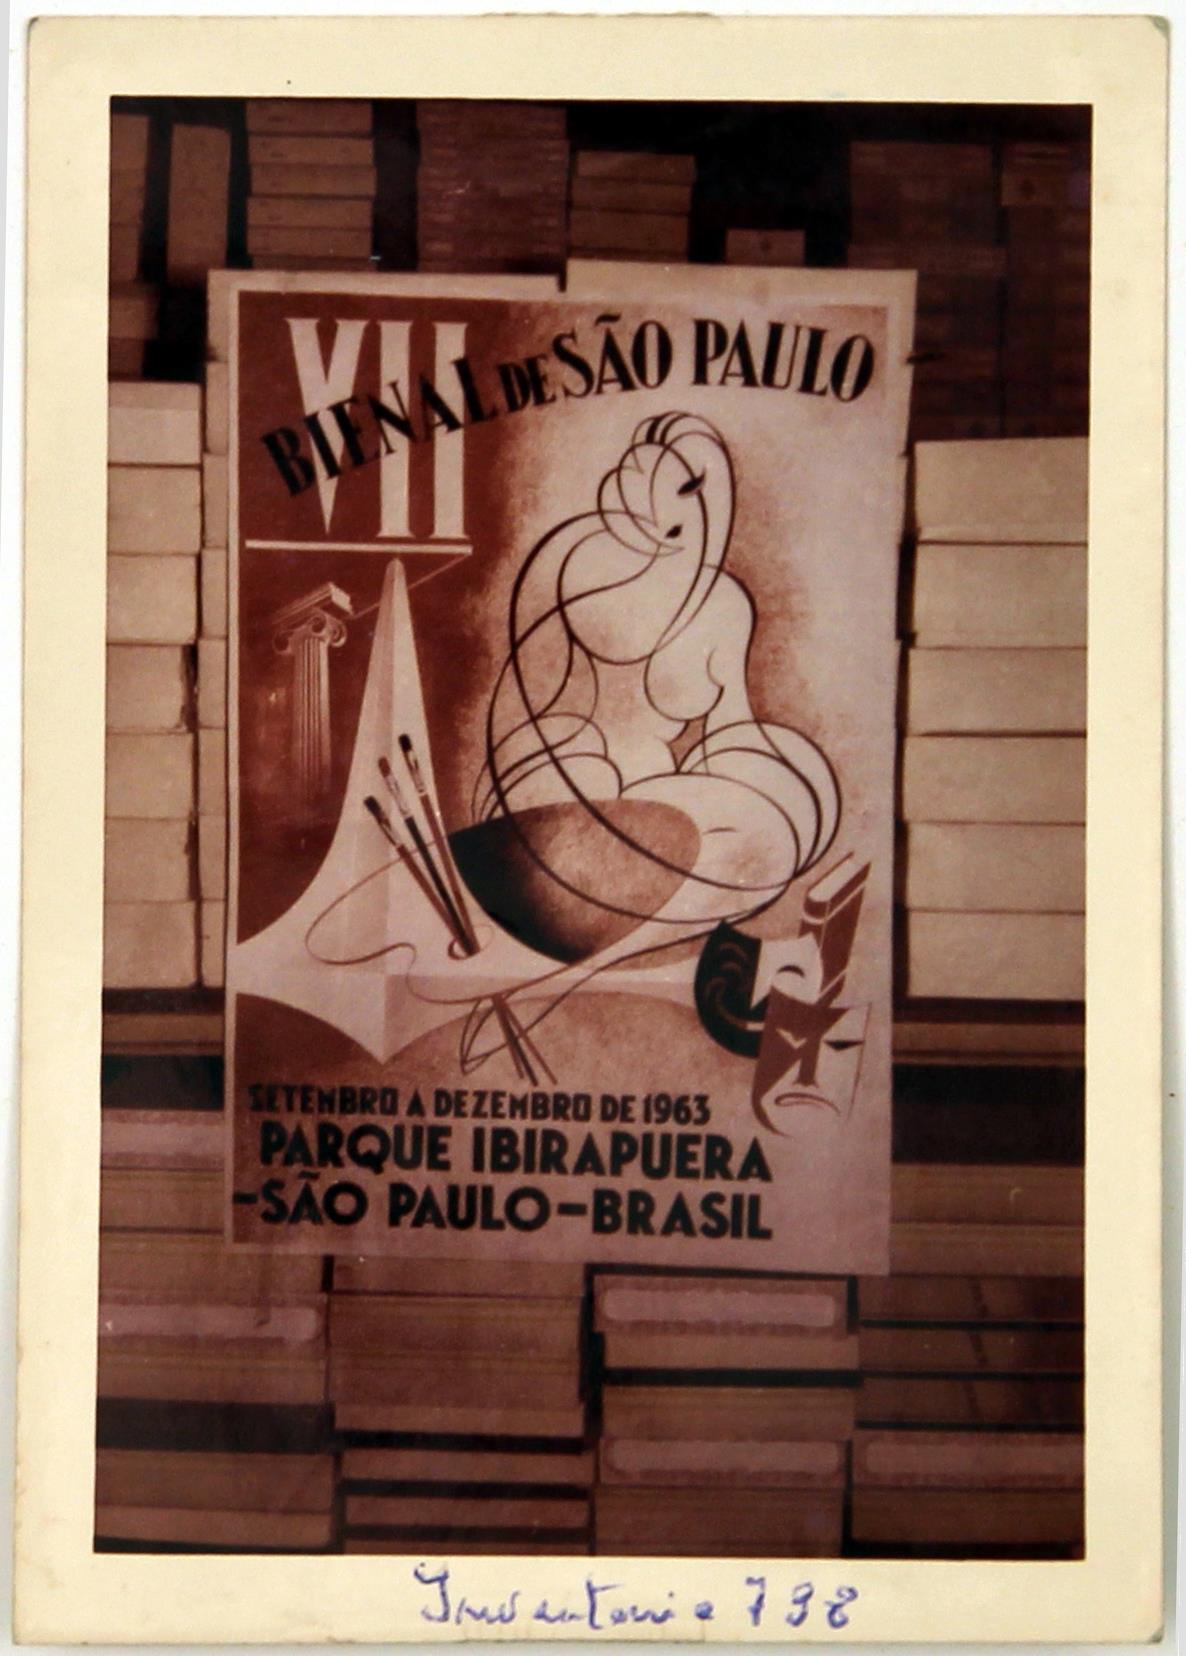 Fotografia tirada ao cartaz publicitário da VII Bienal de São Paulo